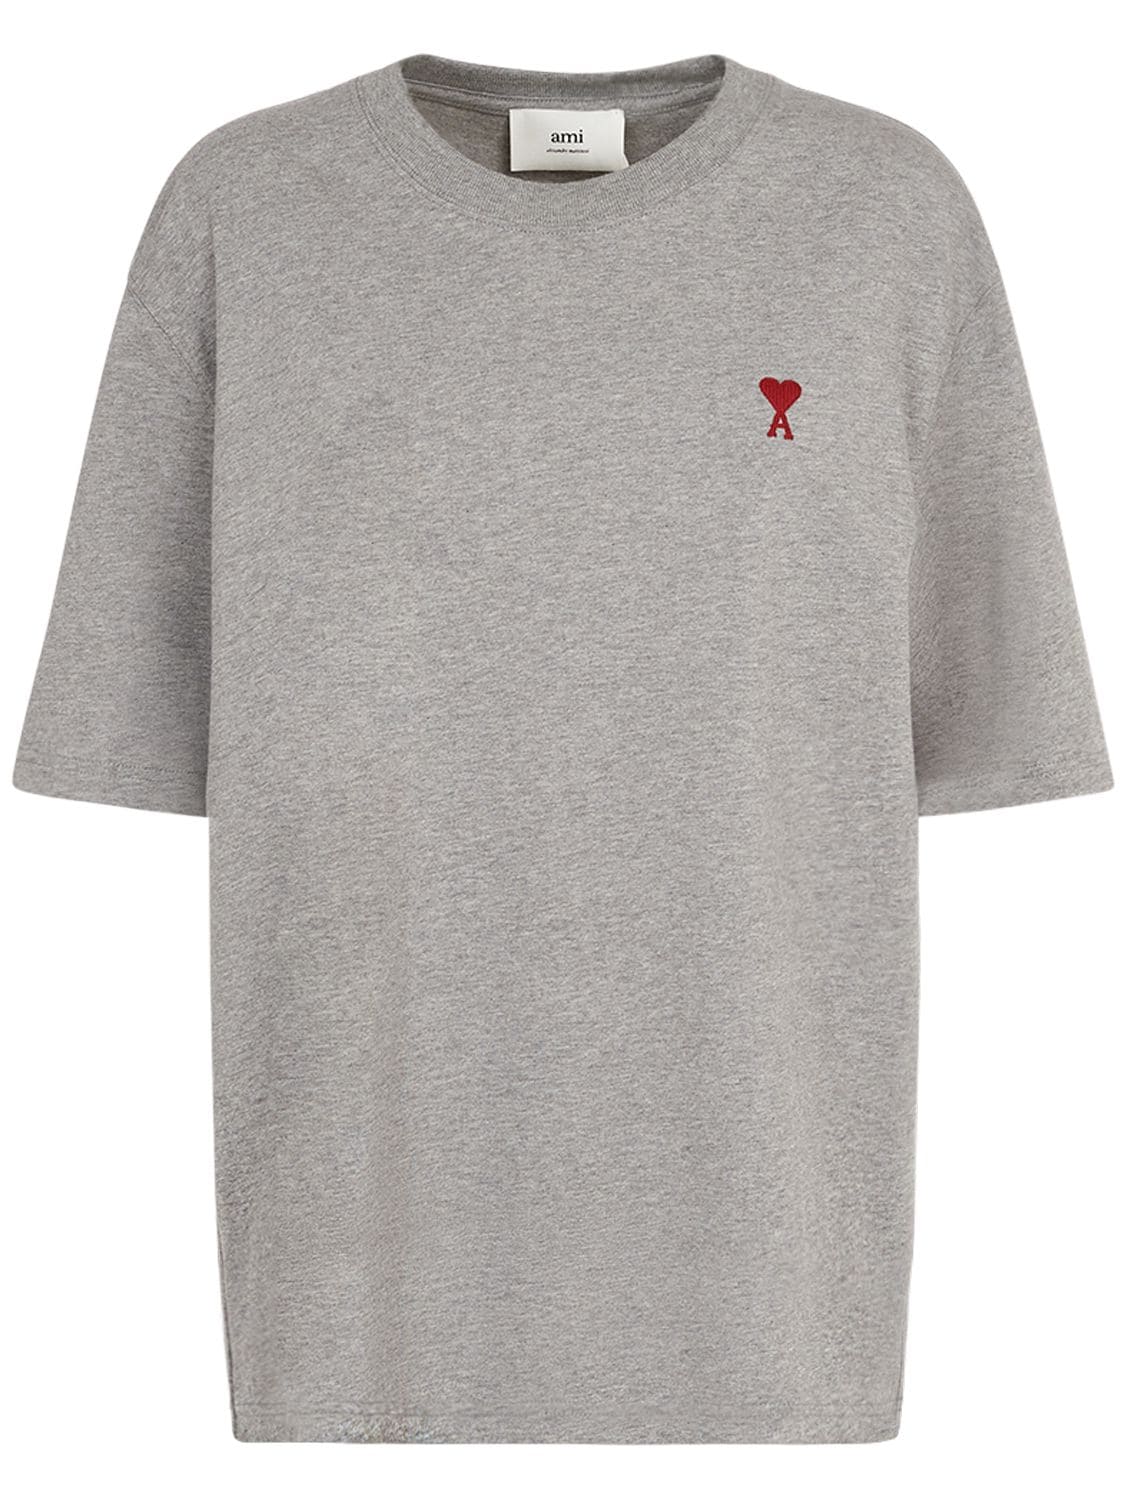 Red Ami De Coeur Cotton Jersey T-shirt – WOMEN > CLOTHING > T-SHIRTS